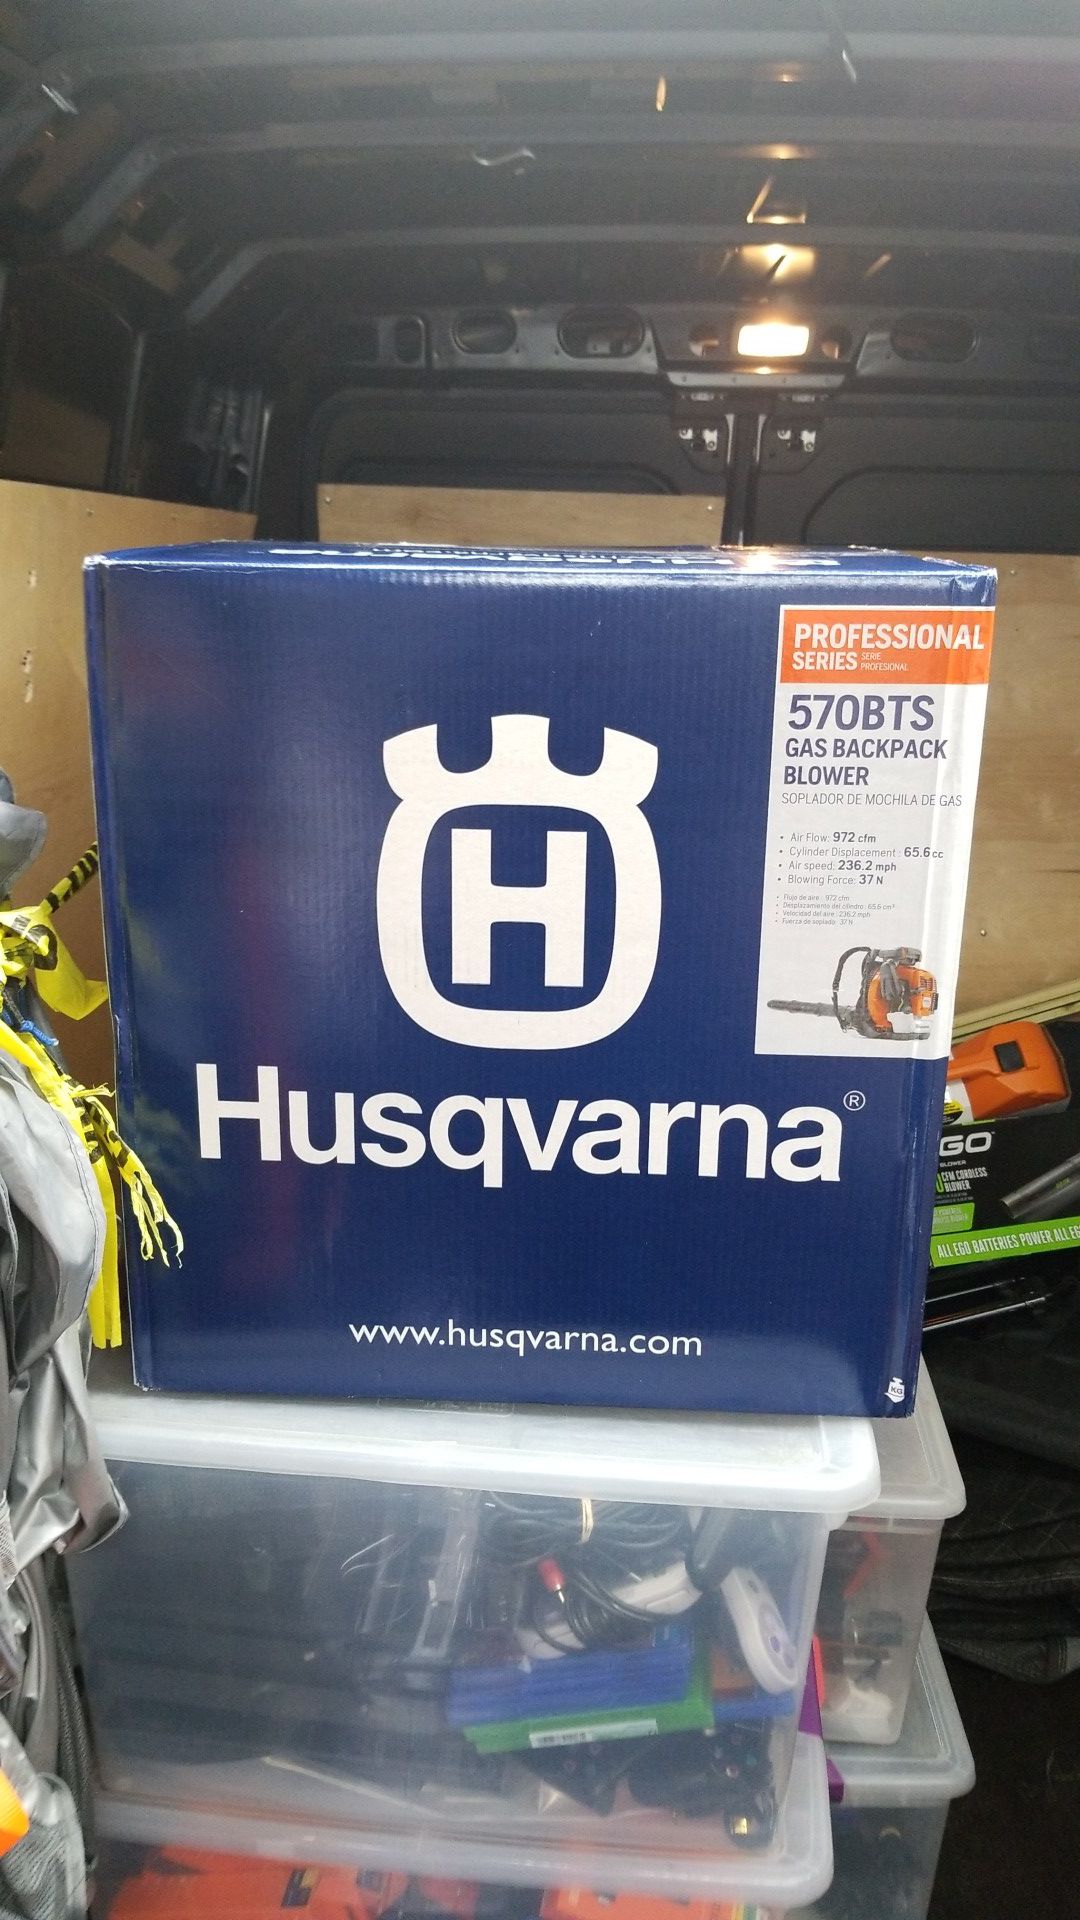 Husqvarna leaf blower model number 570bts